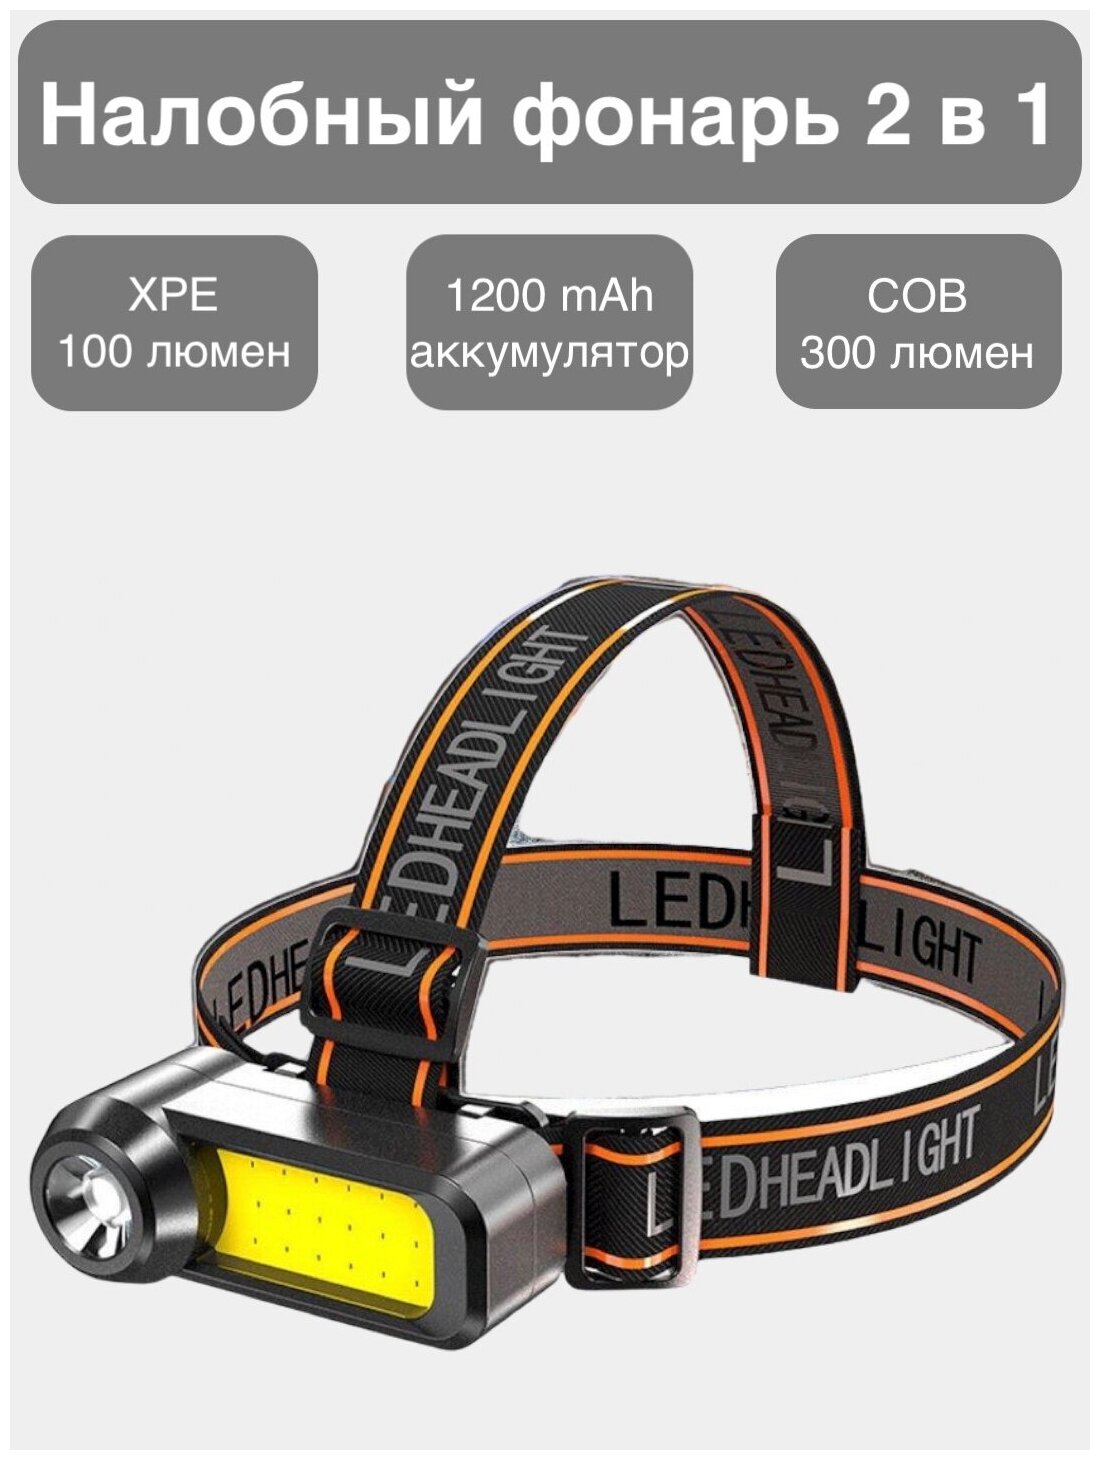 Налобный светодиодный фонарь Uspeh с регулировкой угла свечения / встроенный аккумулятор / зарядка от USB / yyc-1808